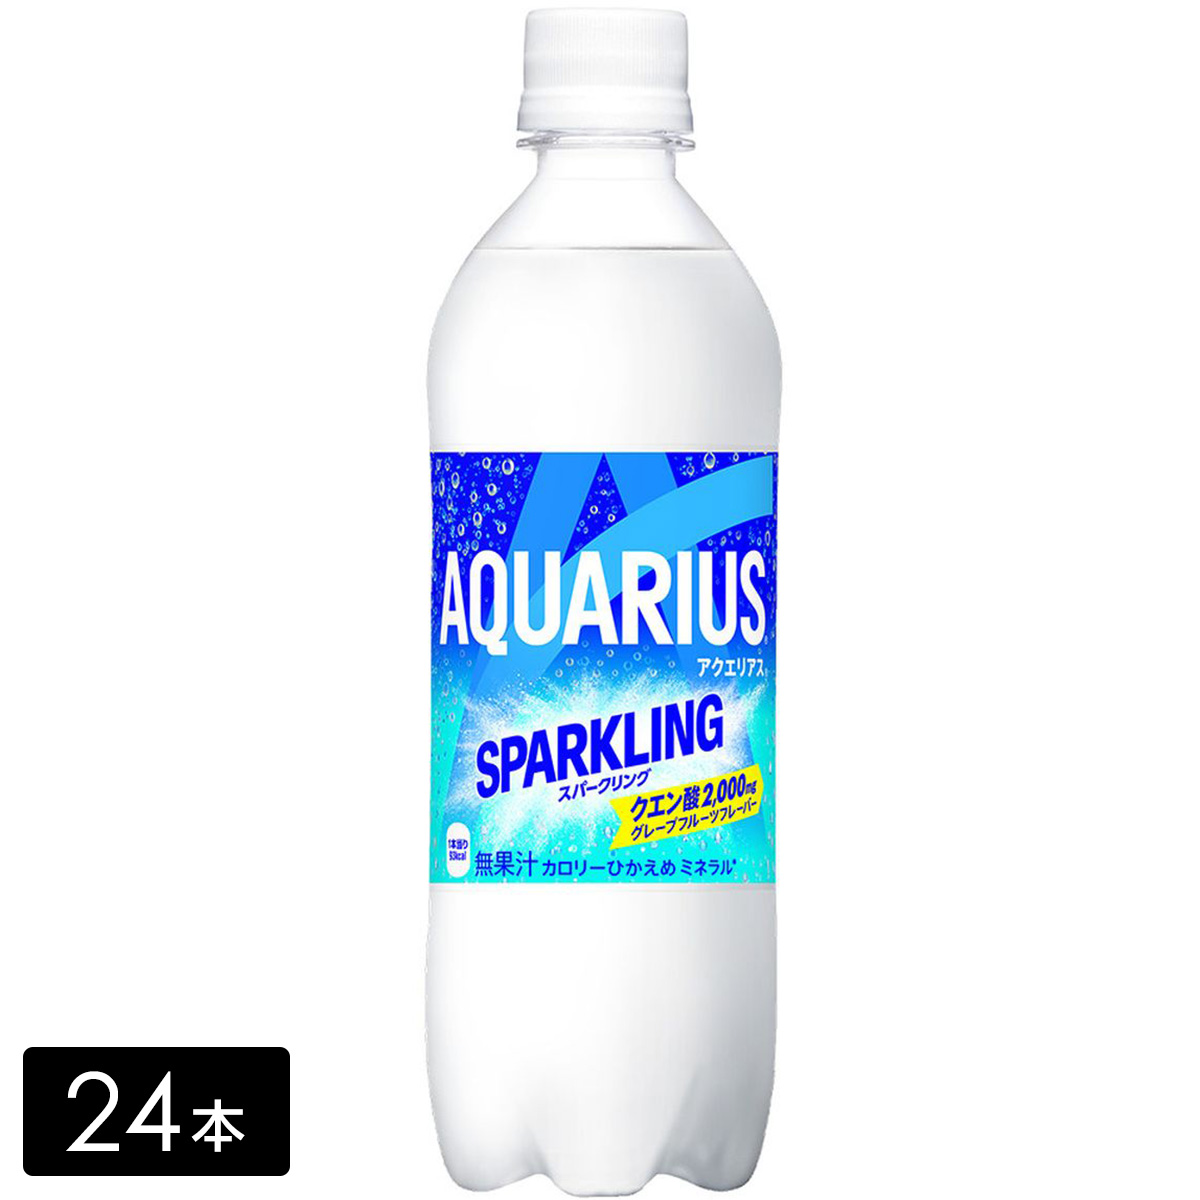 アクエリアス スパークリング 490ml×24本(1箱) 炭酸飲料 熱中症対策 水分補給 AQUARIUS ペットボトル ケース売り